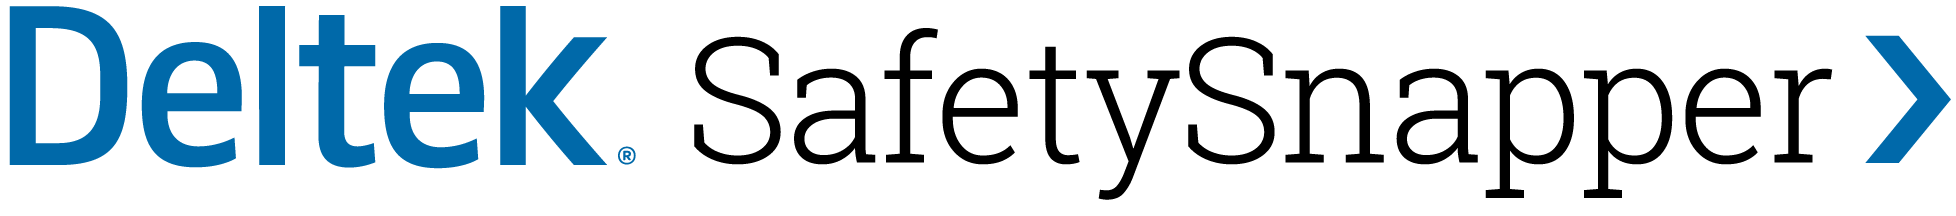 Deltek safetysnapper logo